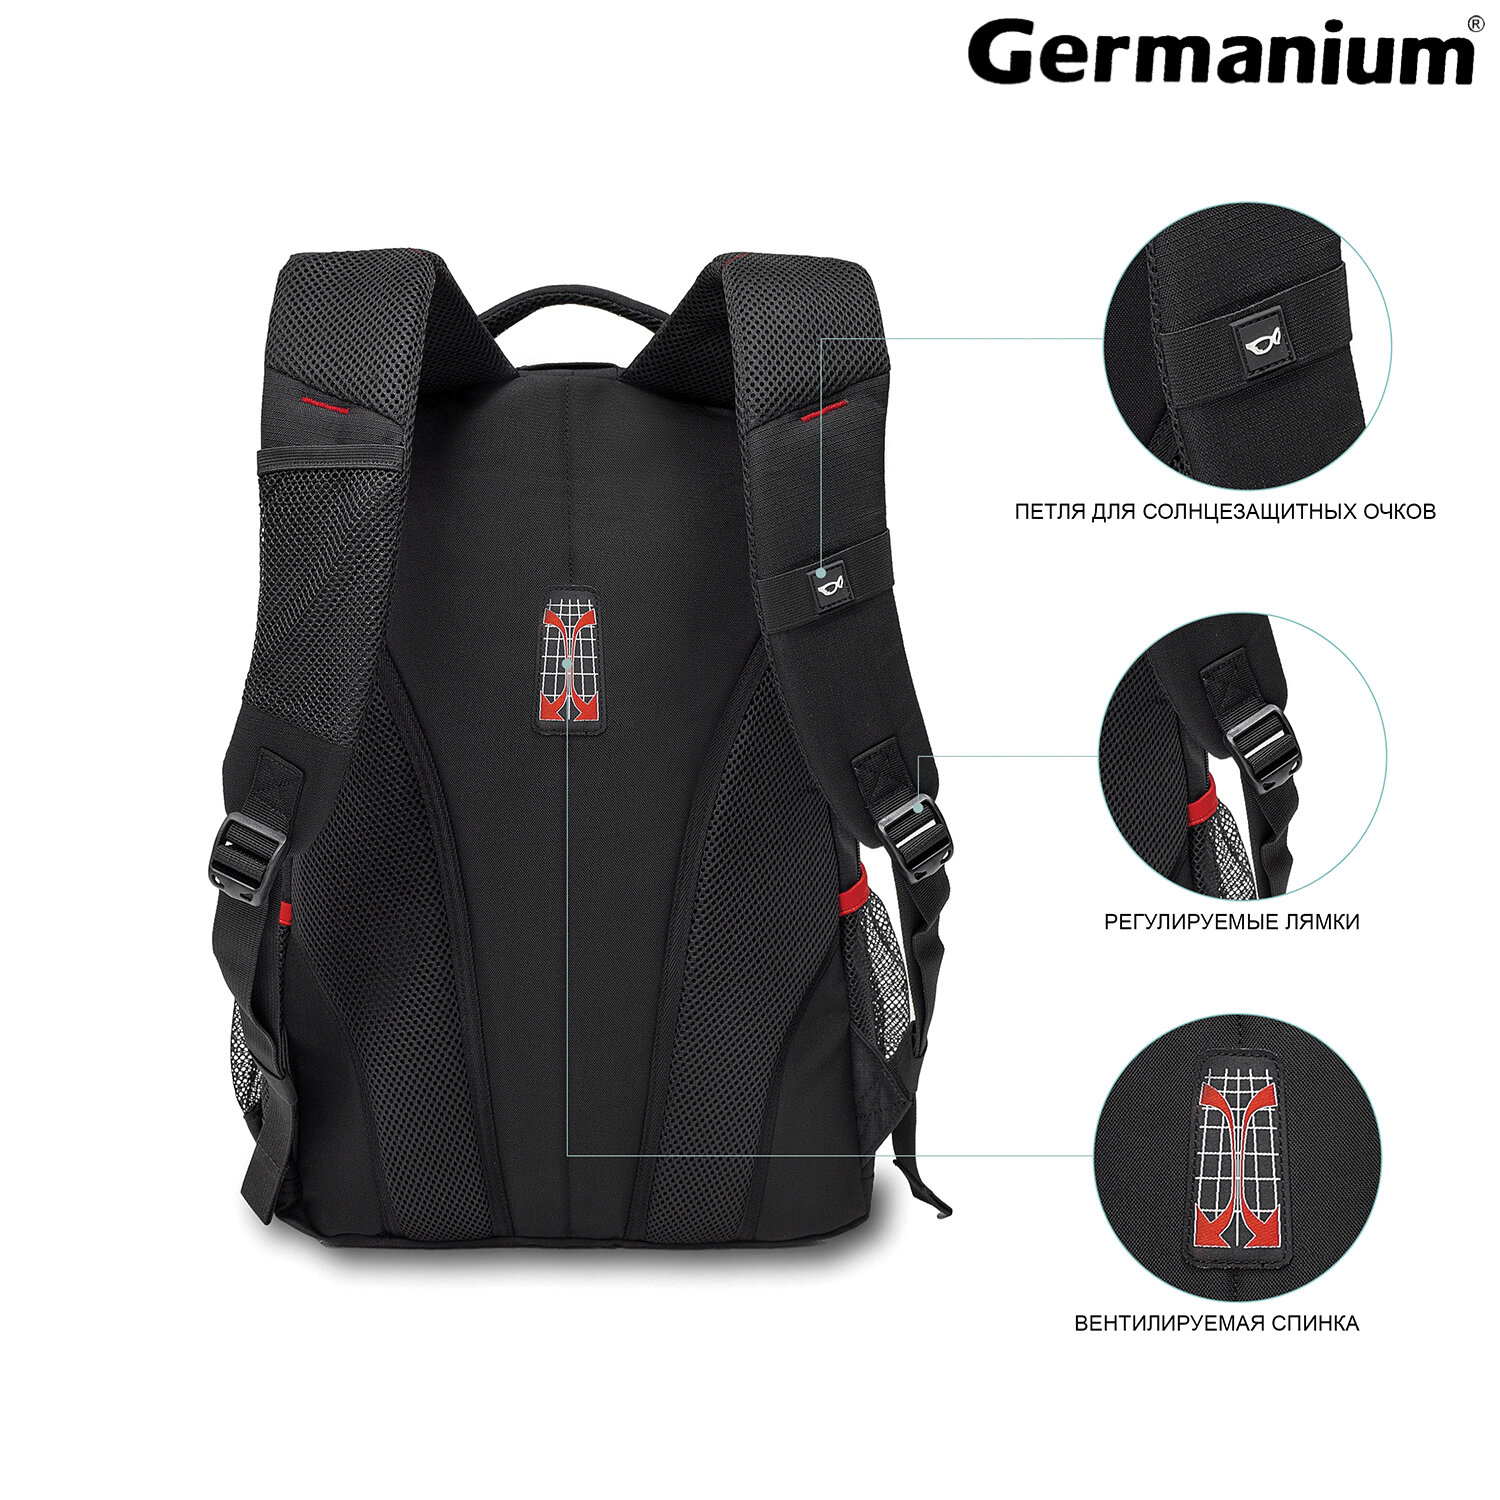 Рюкзак Germanium S-06 универсальный облегченный черный - фото 14